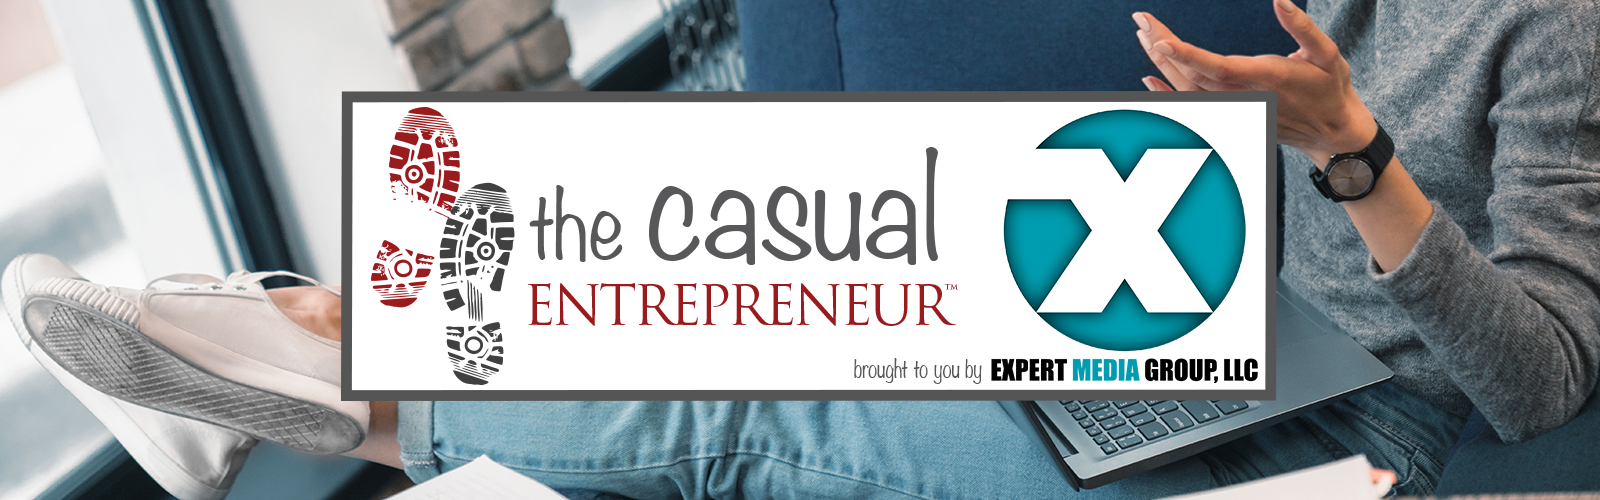 The Casual Entrepreneur